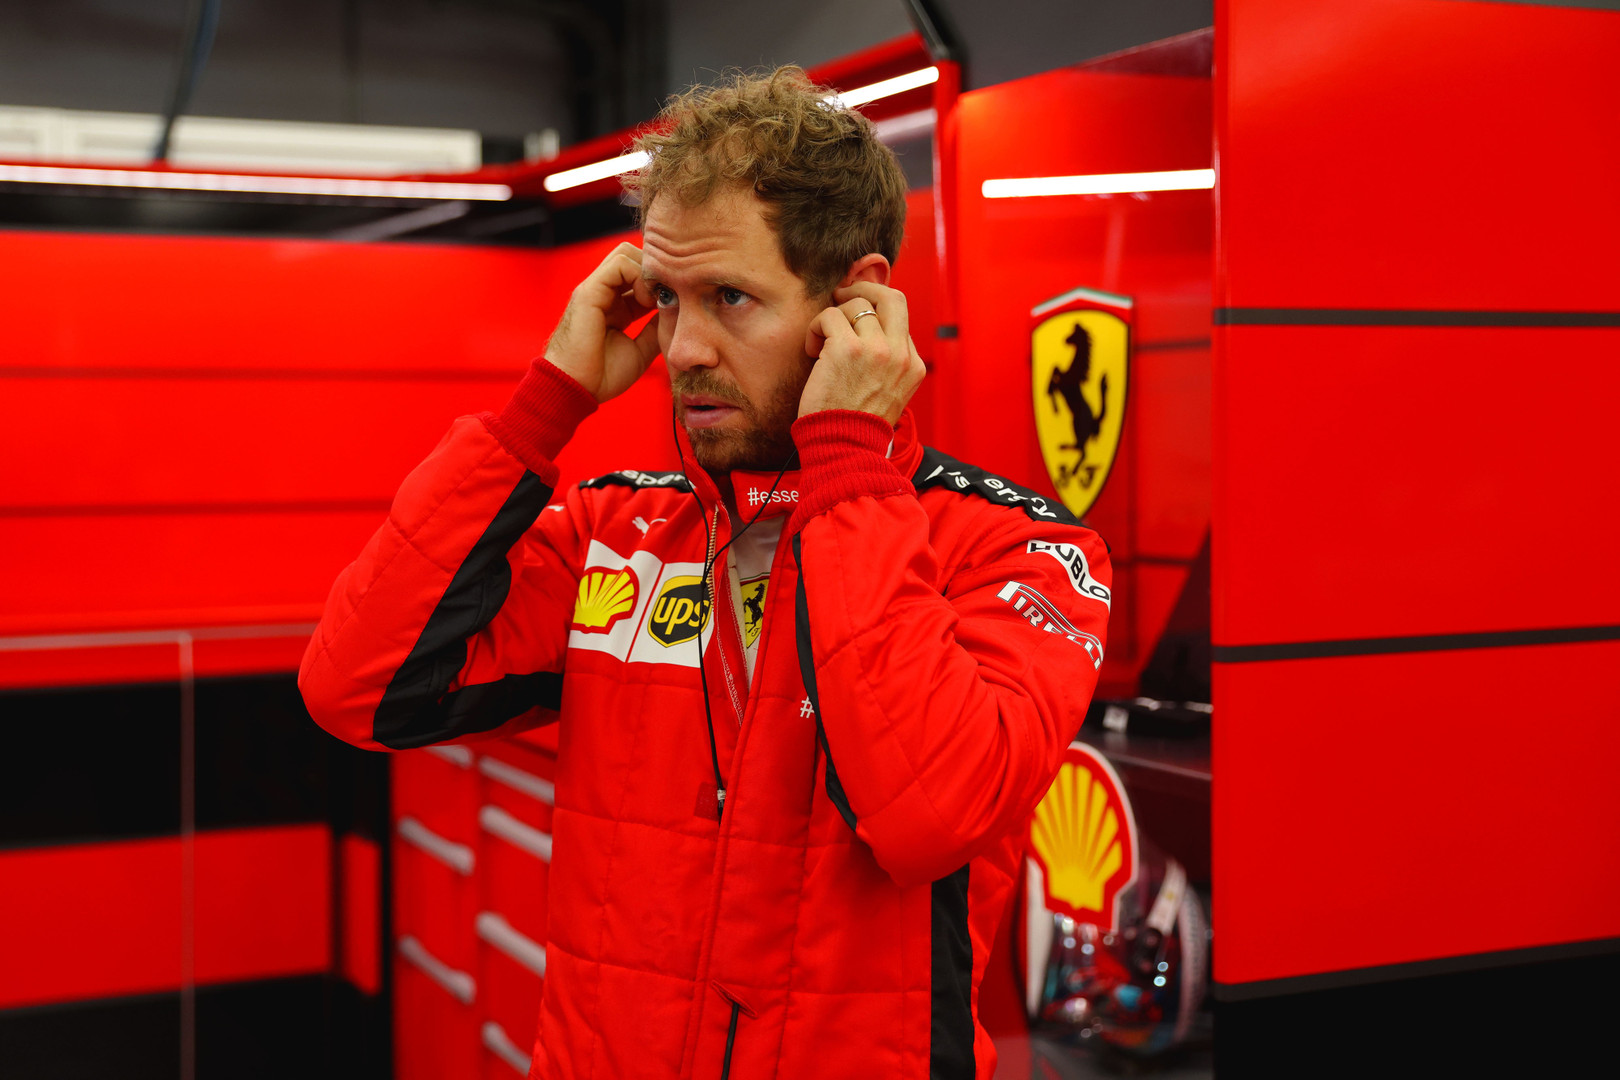 S. Vettelis po paskutinių lenktynių dėkojo komandai ir gyrė C. Leclercą